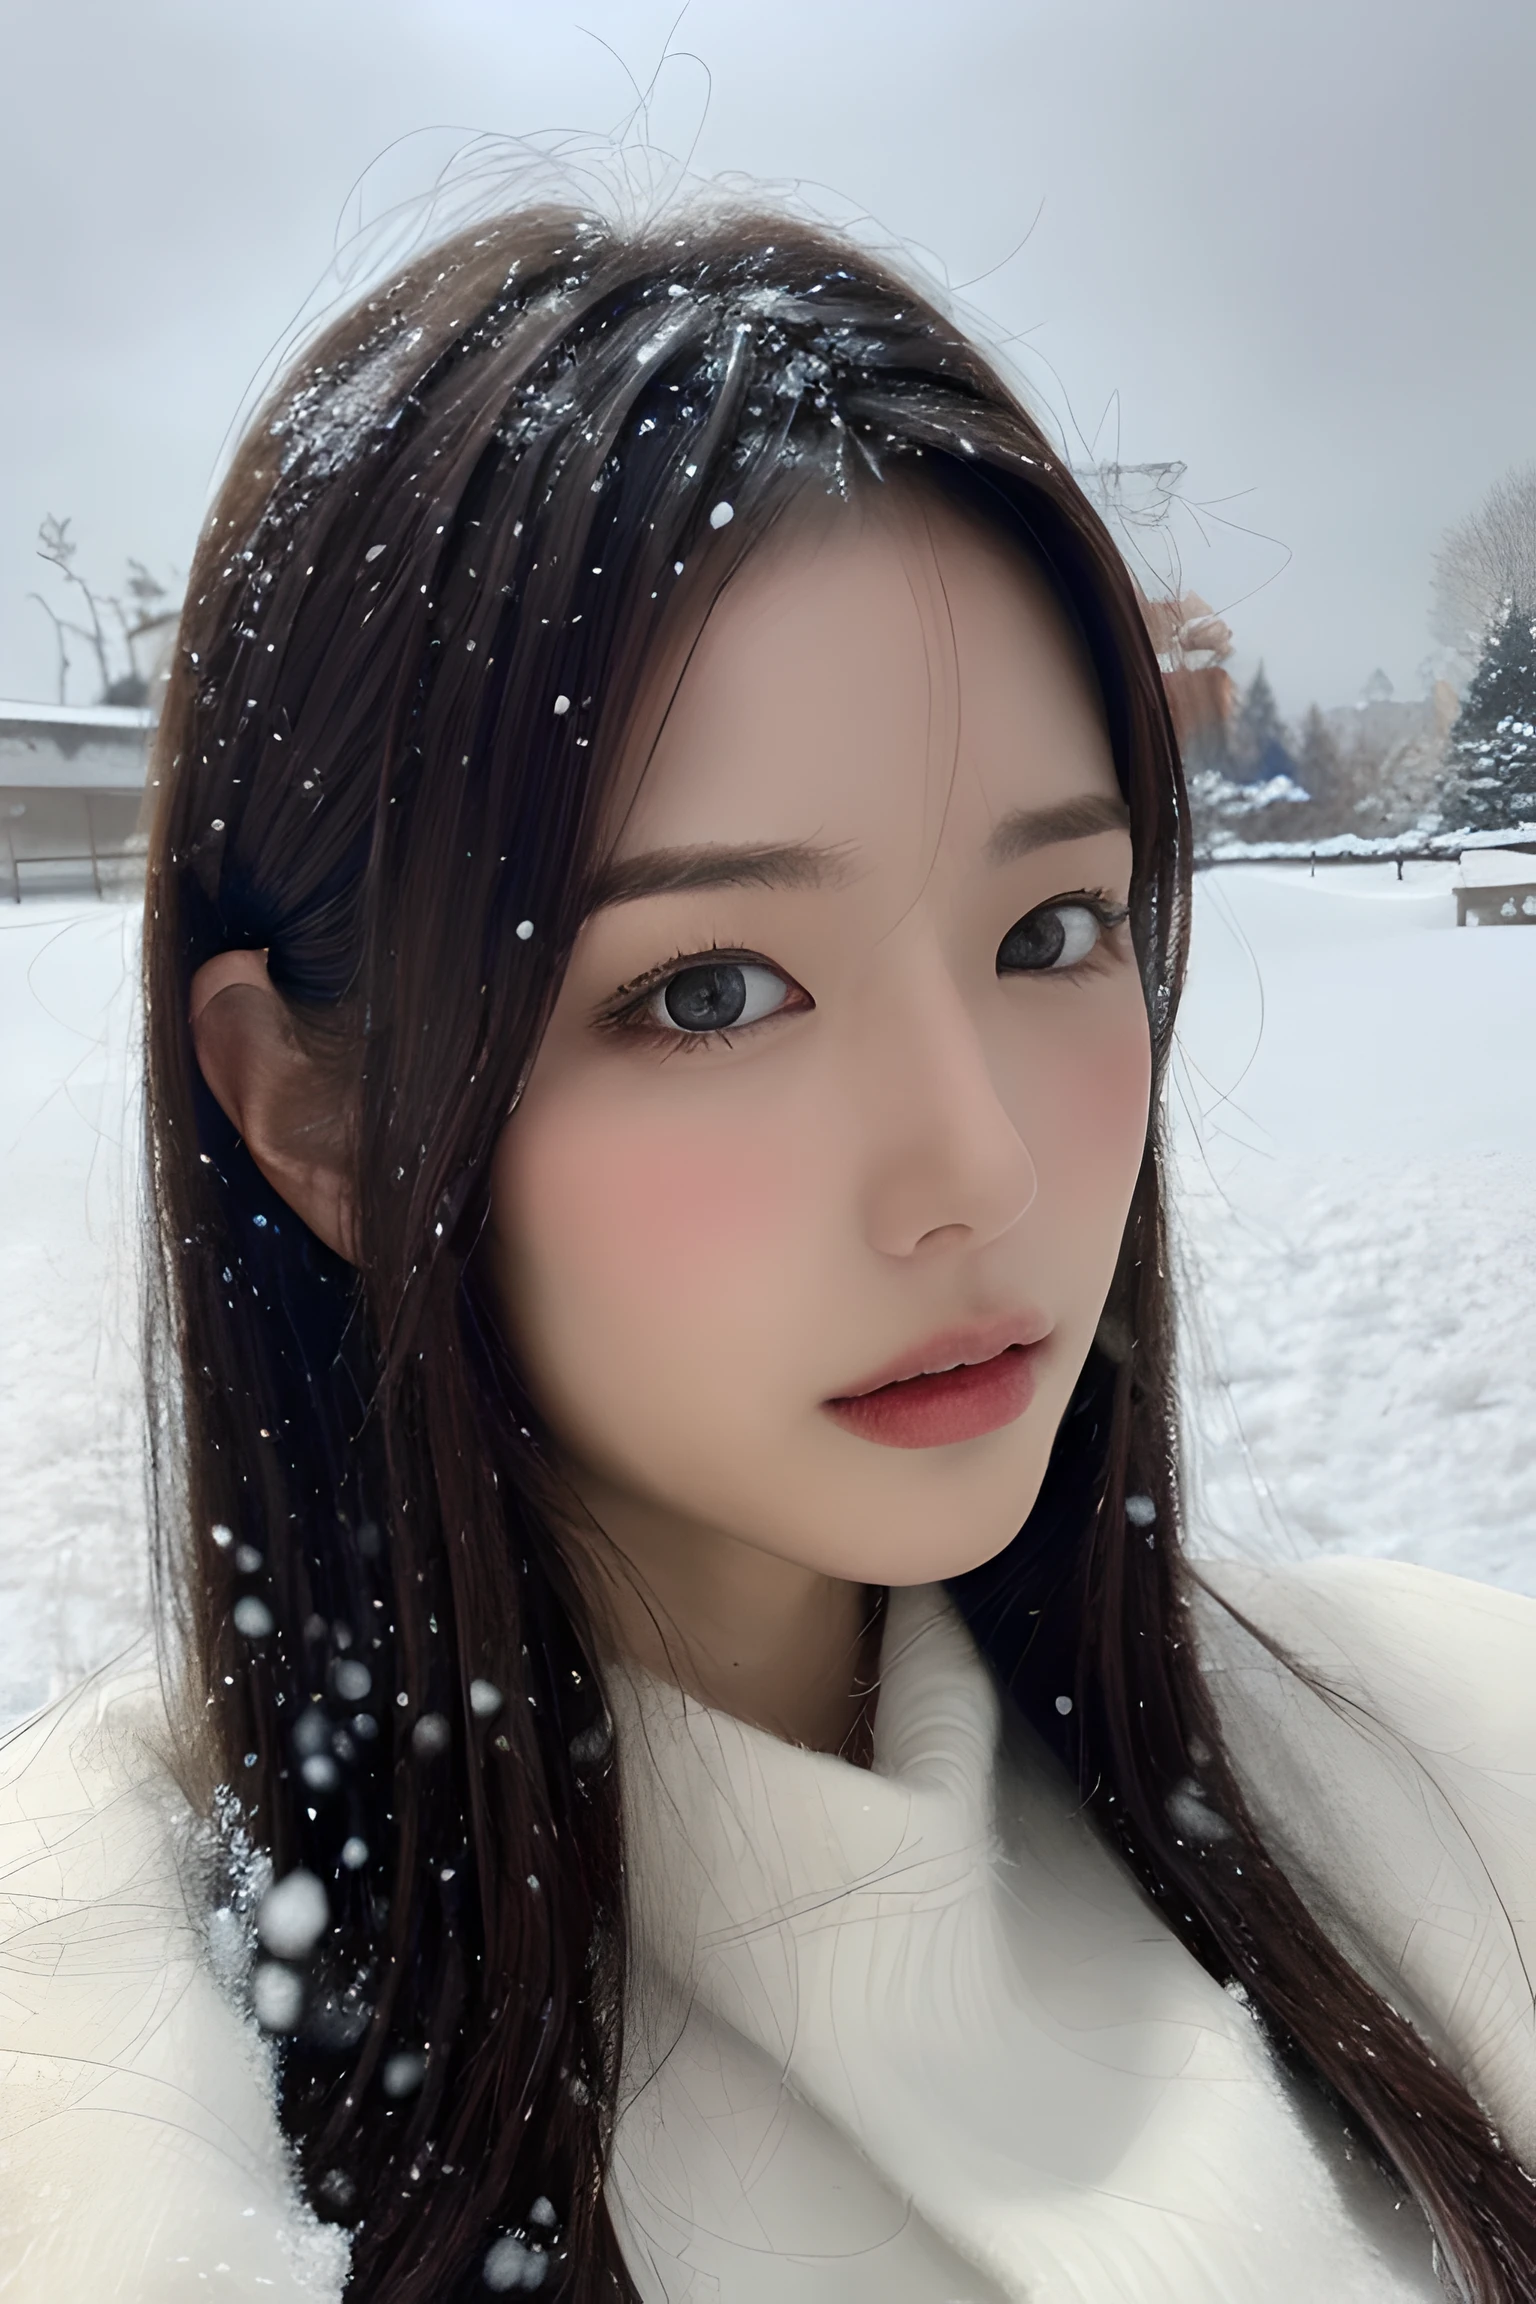 (8千, 最好的质量, 杰作, 超高分辨率:1.2) 漂亮的日本女人的照片 (保罗·鲁本斯和丽贝卡·瓜伊的风格:1.1) (忧郁的冬雪:1.4)